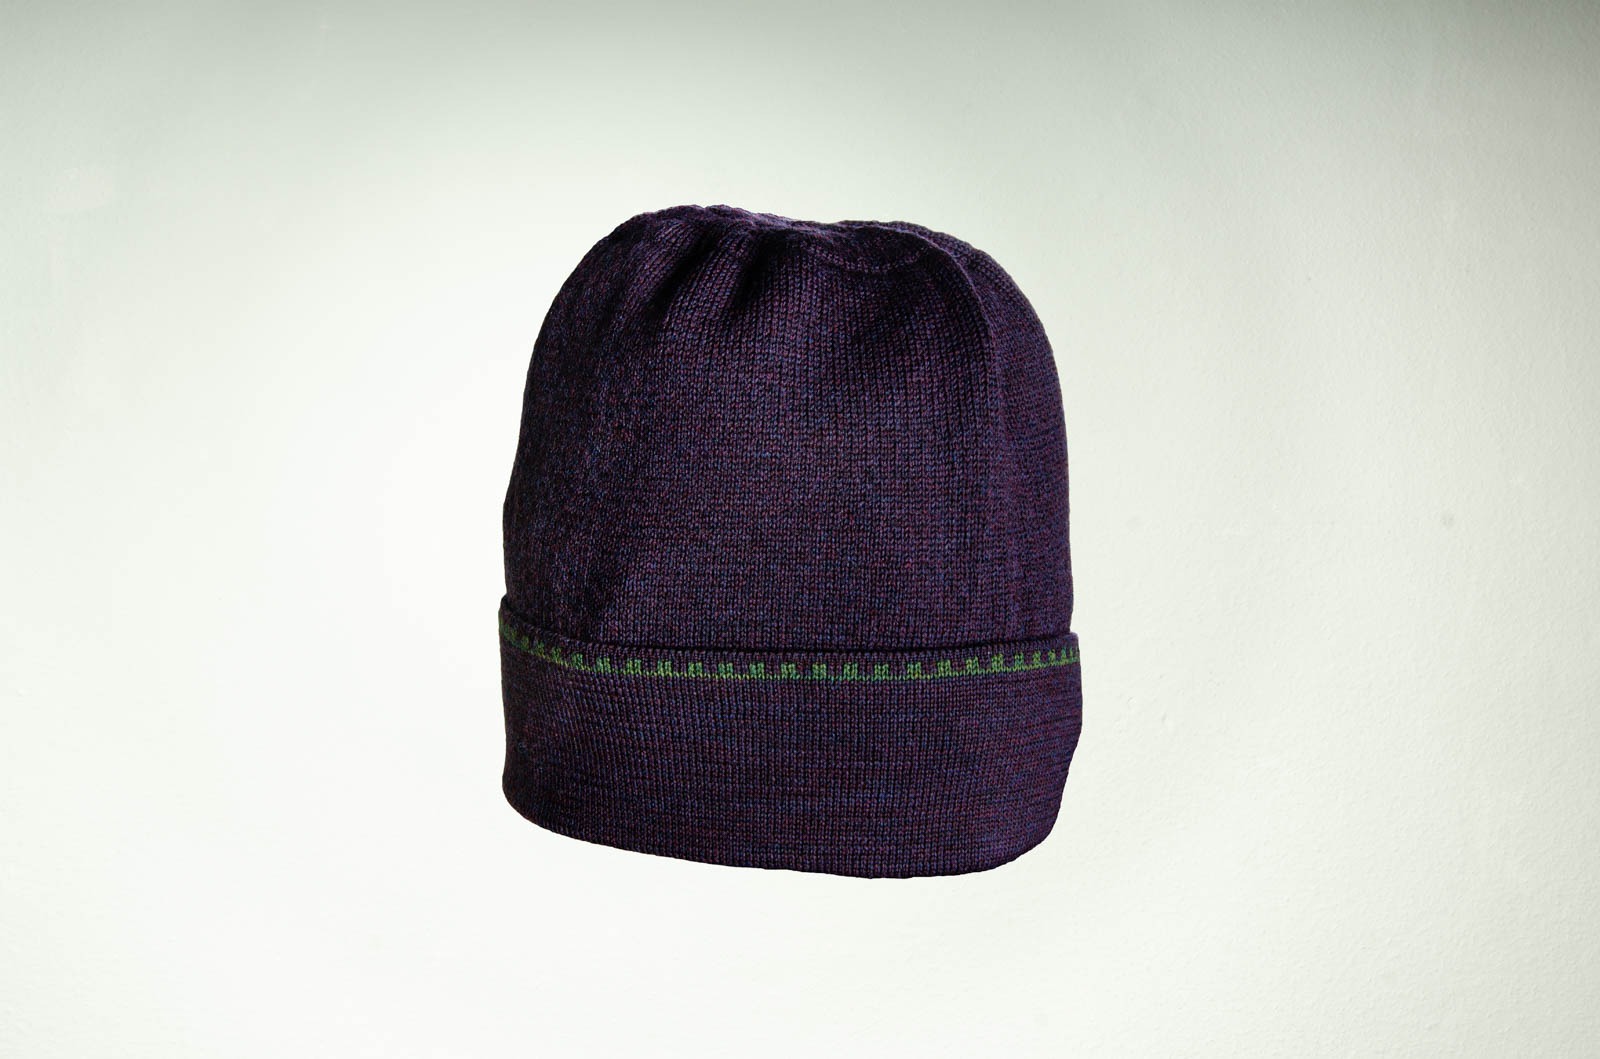 Merino Schal Mütze und Pulswärmer Irland in purpur und dunkelgrün 10